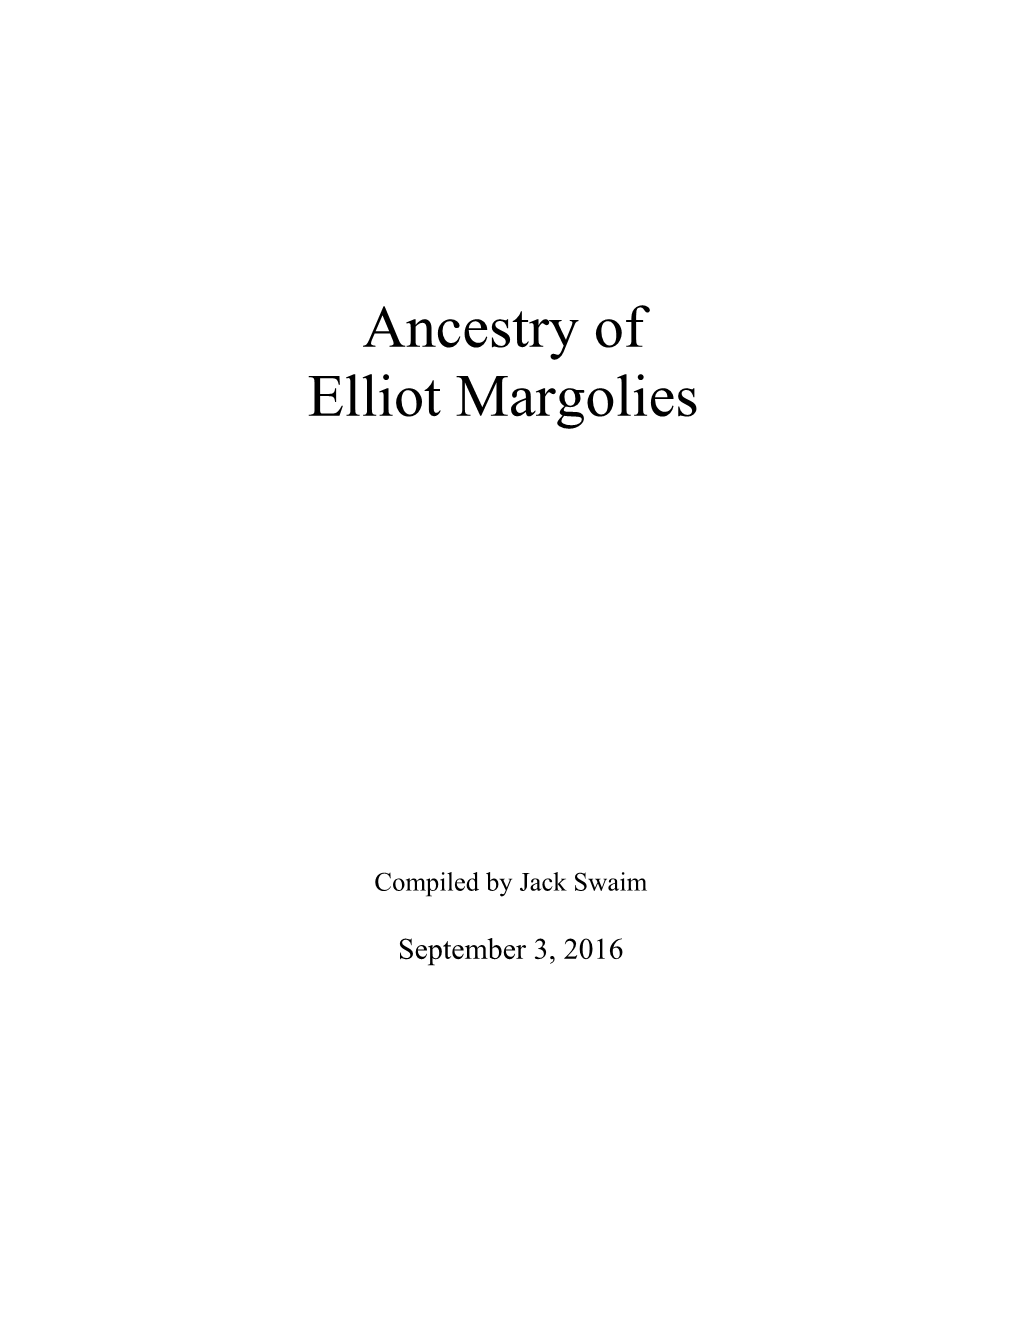 Ancestry of Elliot Margolies September 3, 2016